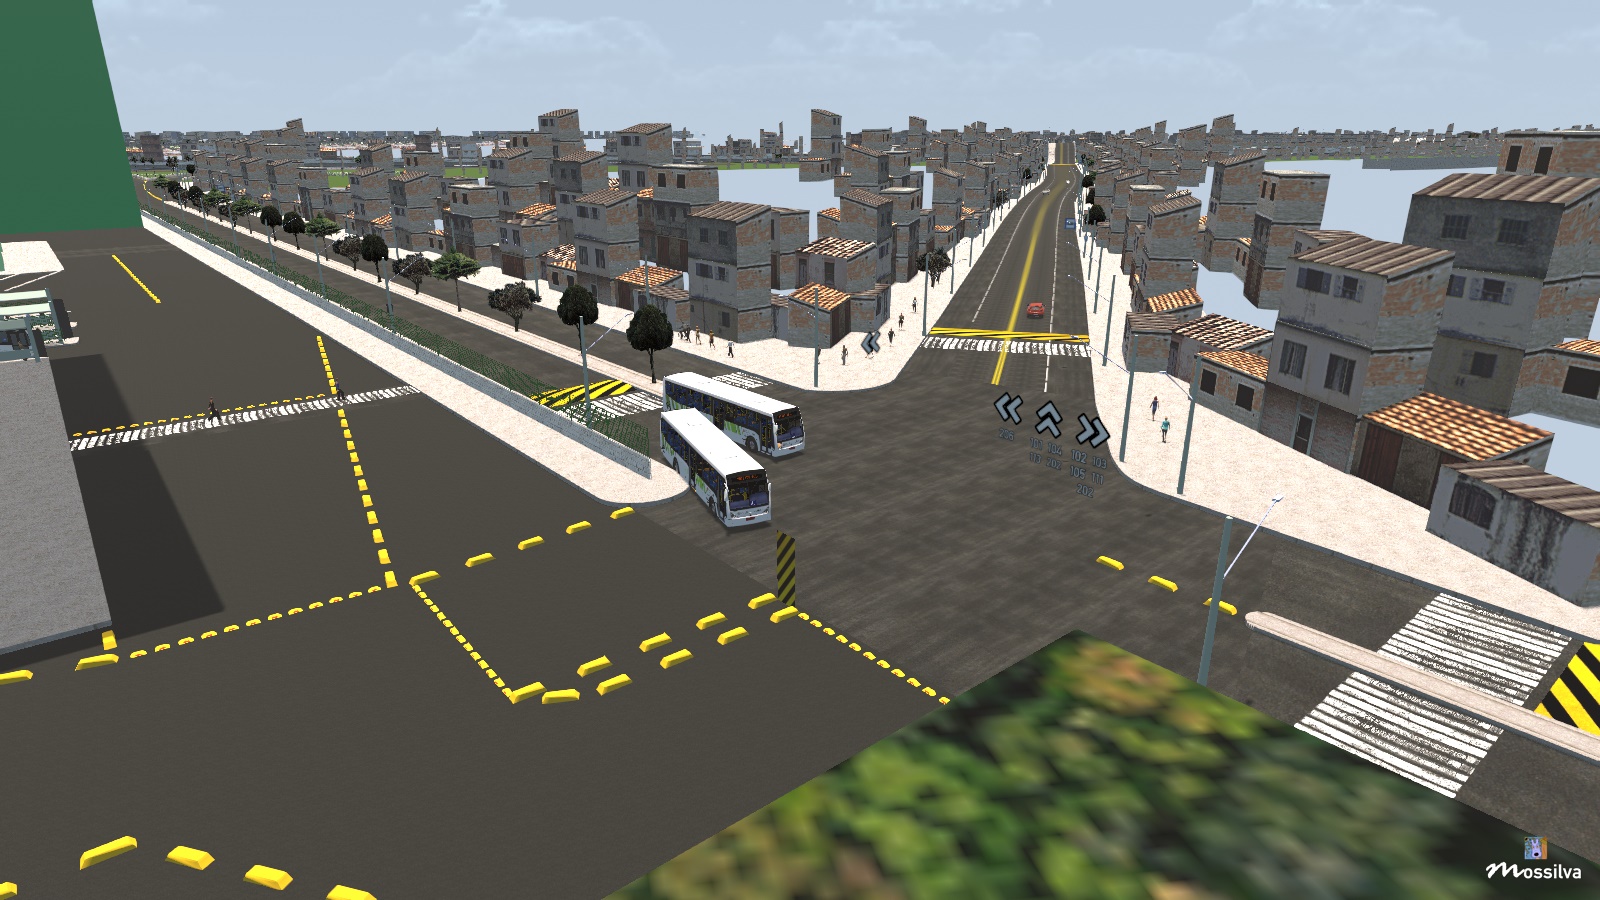 Proton Bus Simulator Urbano na Favela !!!